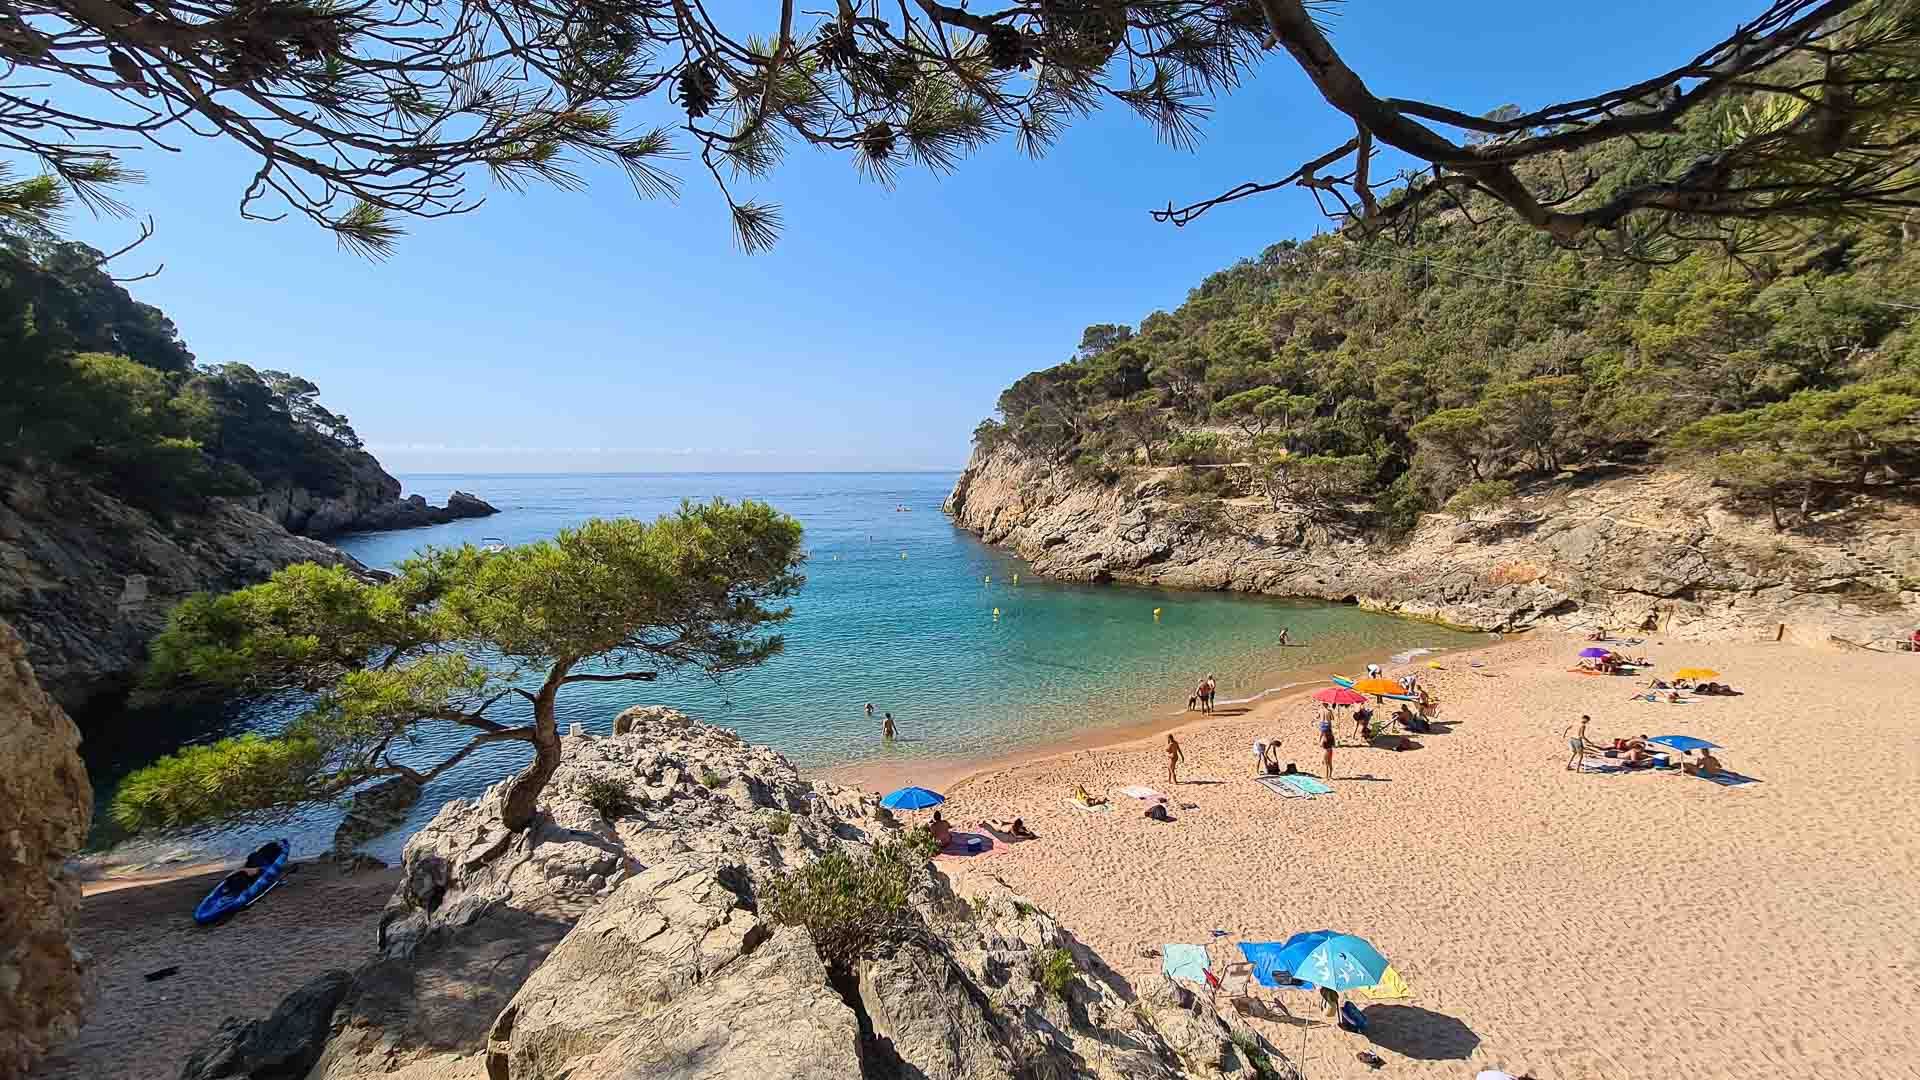 De mooiste plekken aan de Costa Brava in Spanje